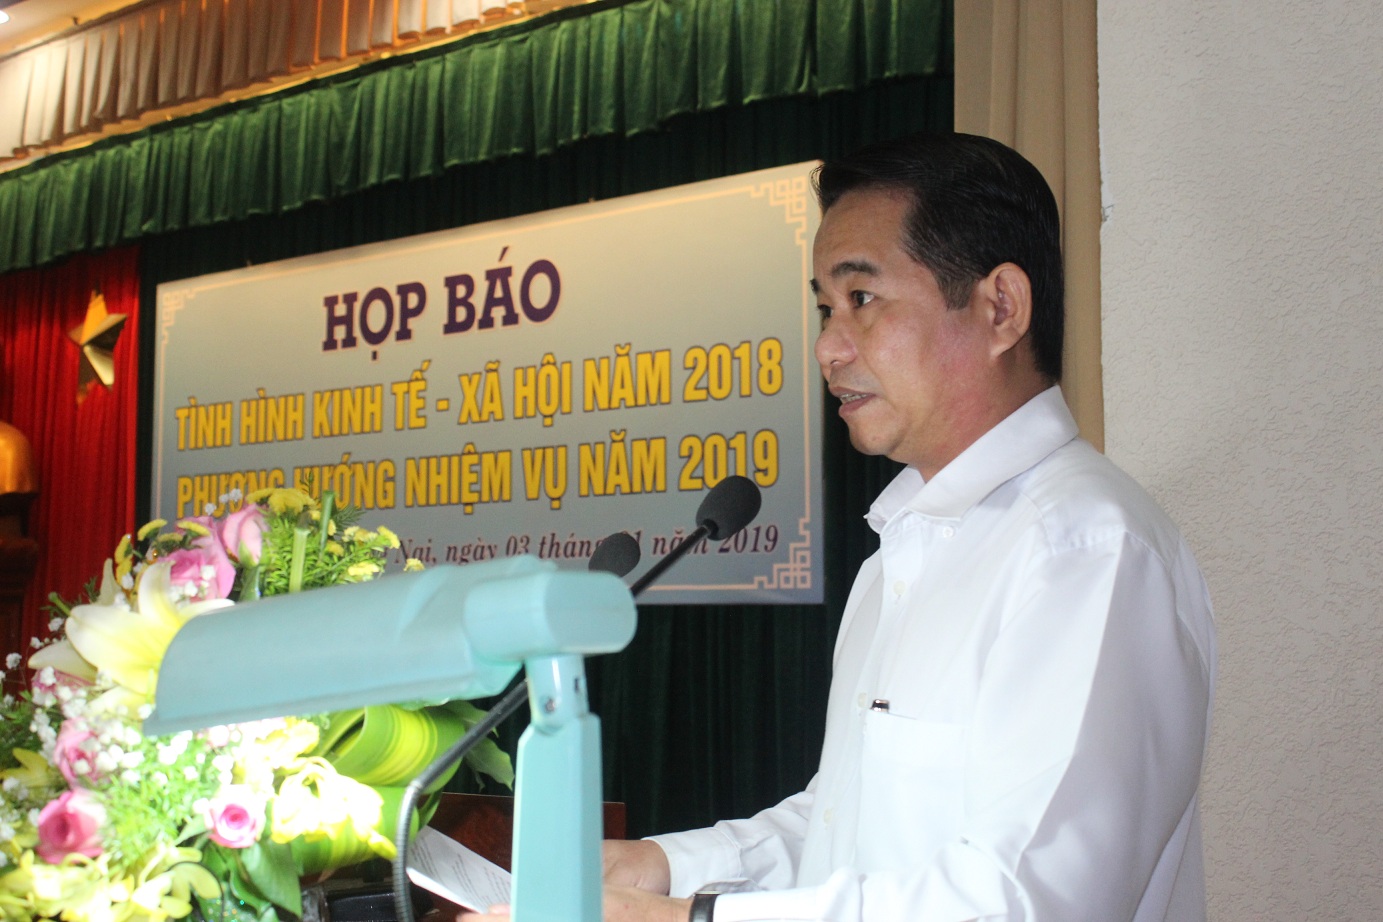 Trưởng ban Tuyên giáo Tỉnh ủy Thái Bảo phát biểu tại buổi họp báo